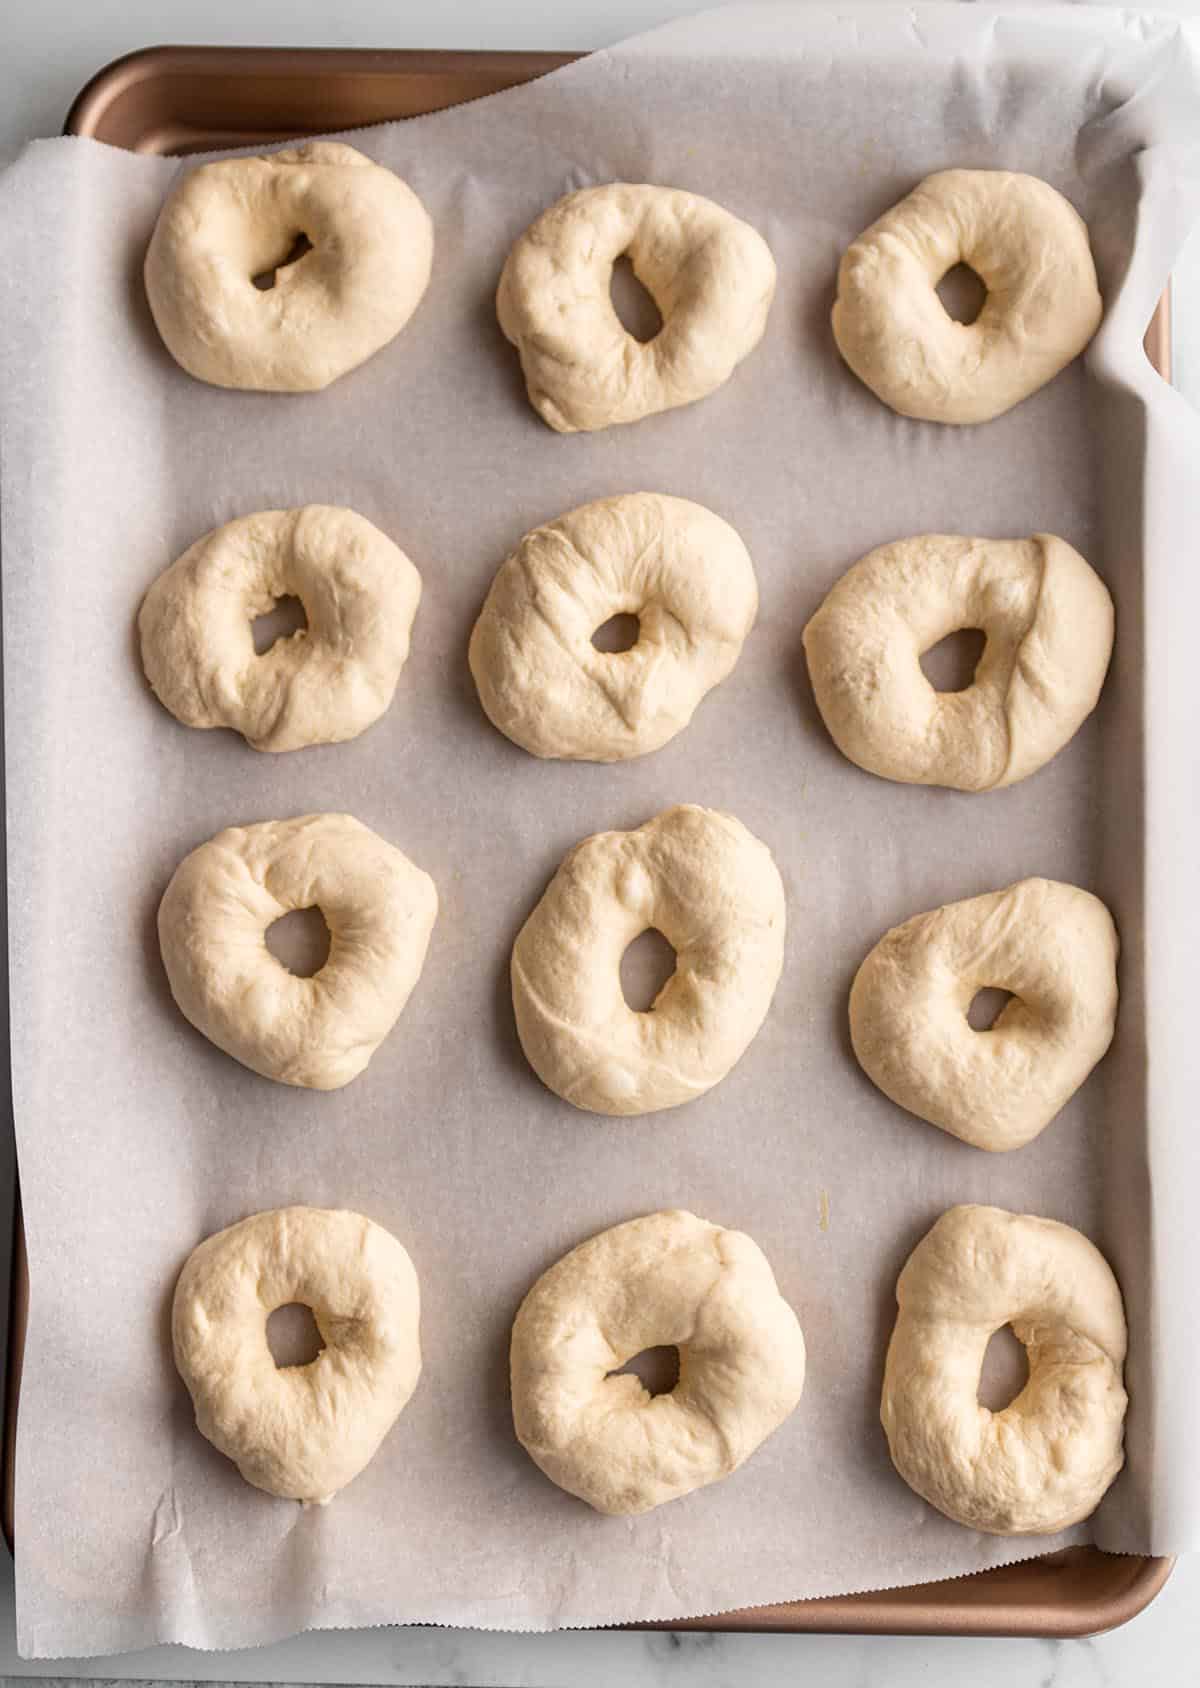 12 bagel rings on a baking sheet.